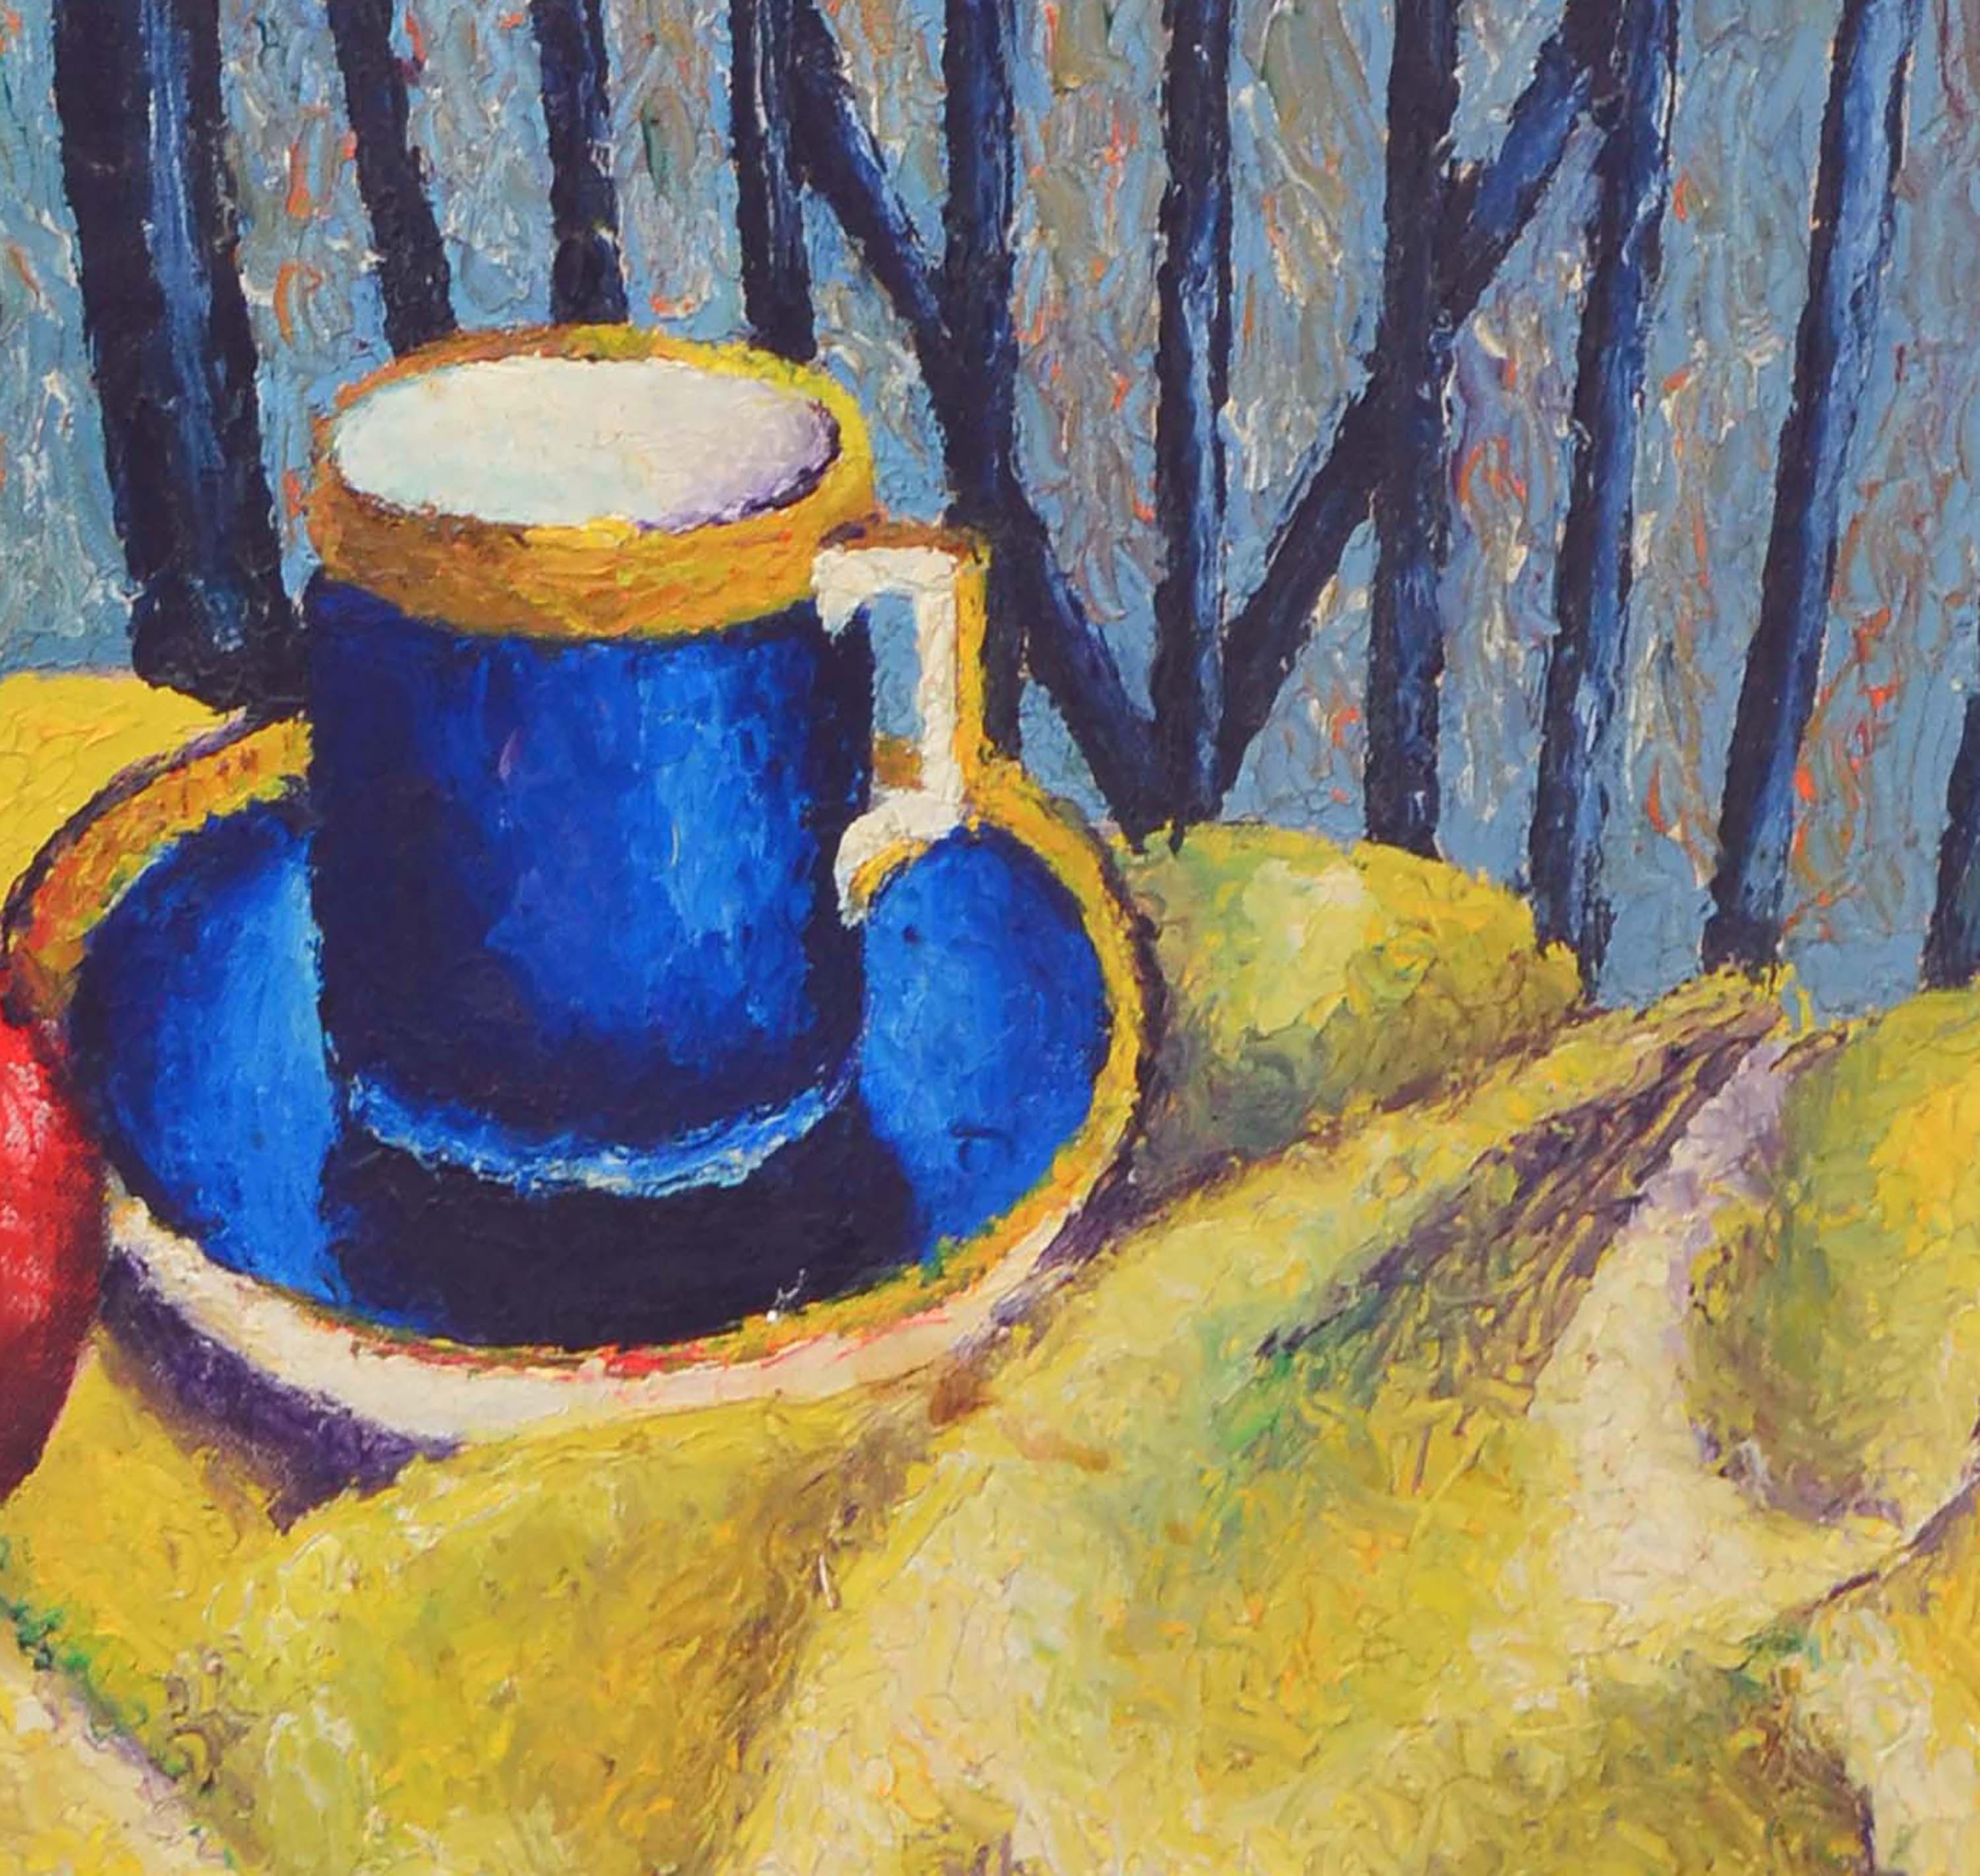 Lebhaftes zeitgenössisches Stillleben mit kräftigen Primärfarben eines roten Apfels und einer blauen Tasse auf einem gelben Tischtuch mit einer Flasche Wein von E. Star (Amerikaner, 20. Jahrhundert). Präsentiert in einem schwarzen Holzrahmen.